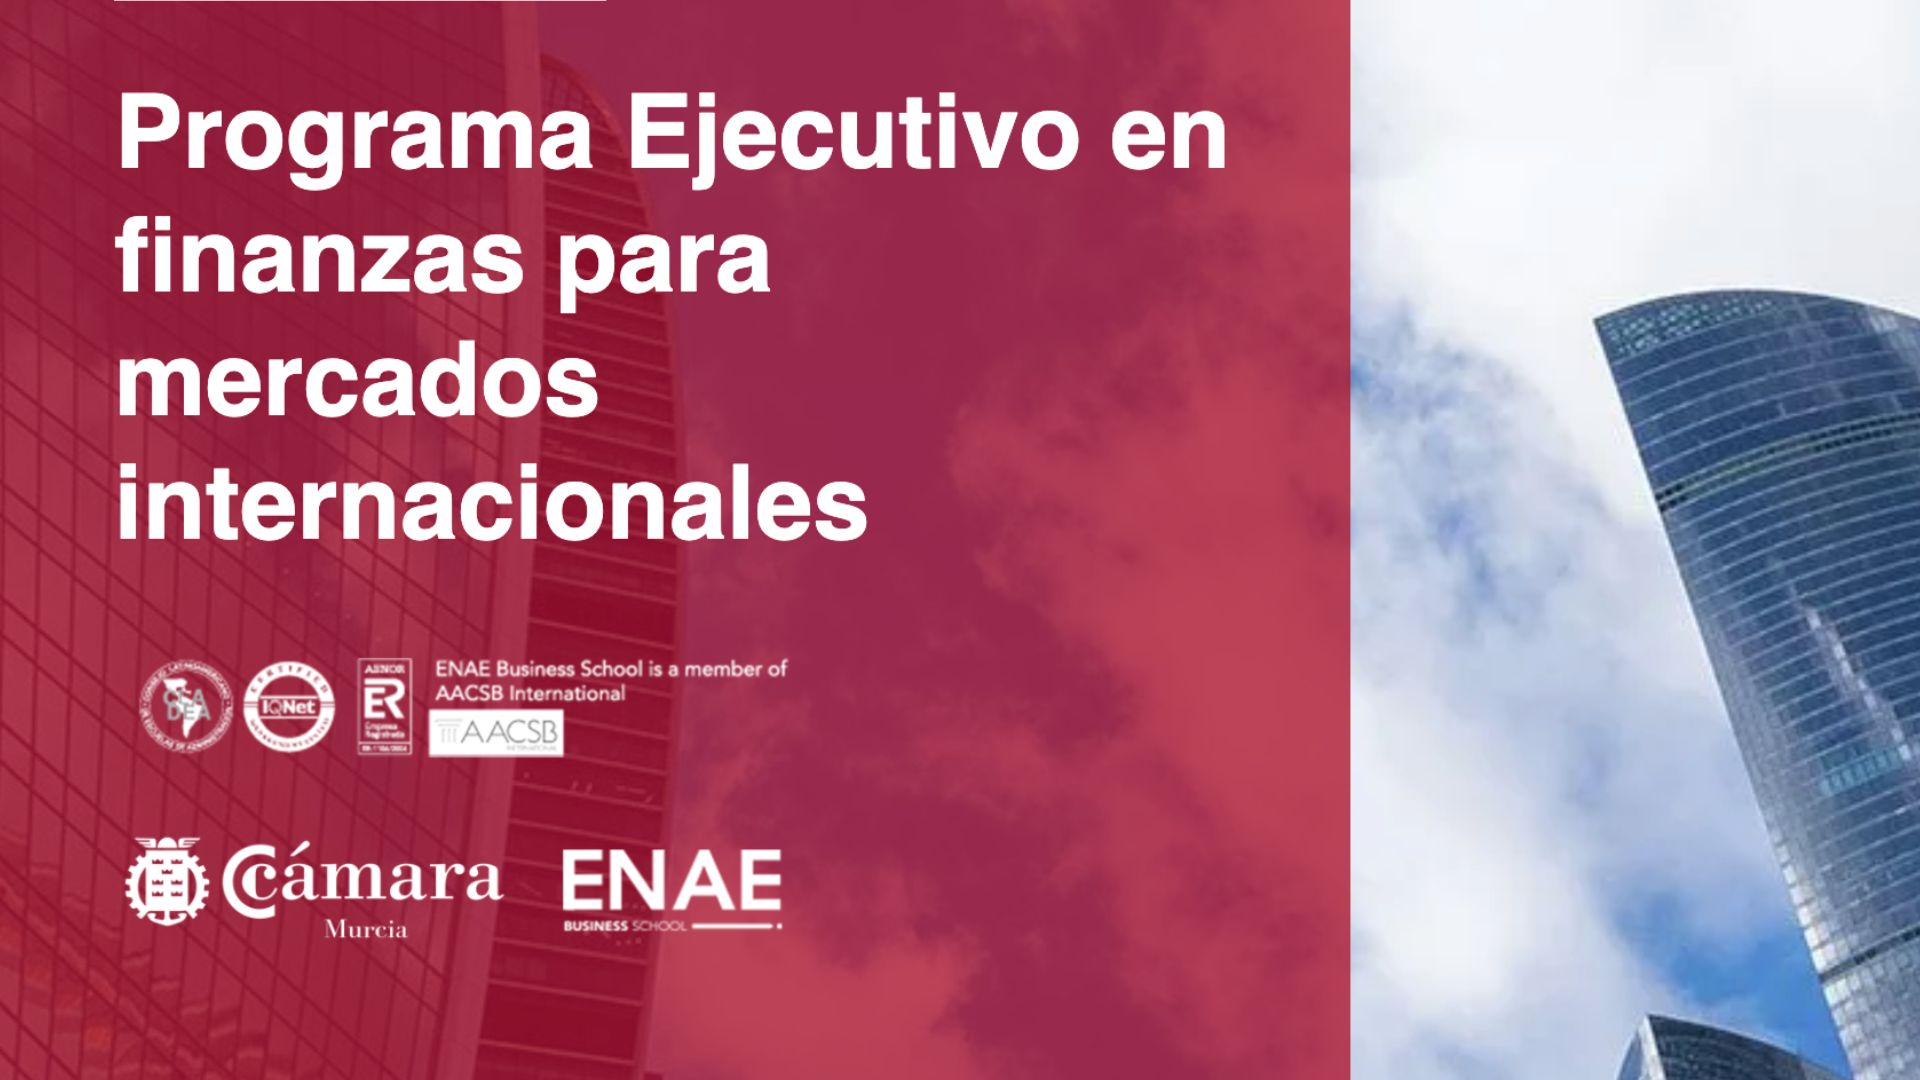 Finanzas en mercados internacionales | Programa Ejecutivo | Cámara de Comercio de Murcia